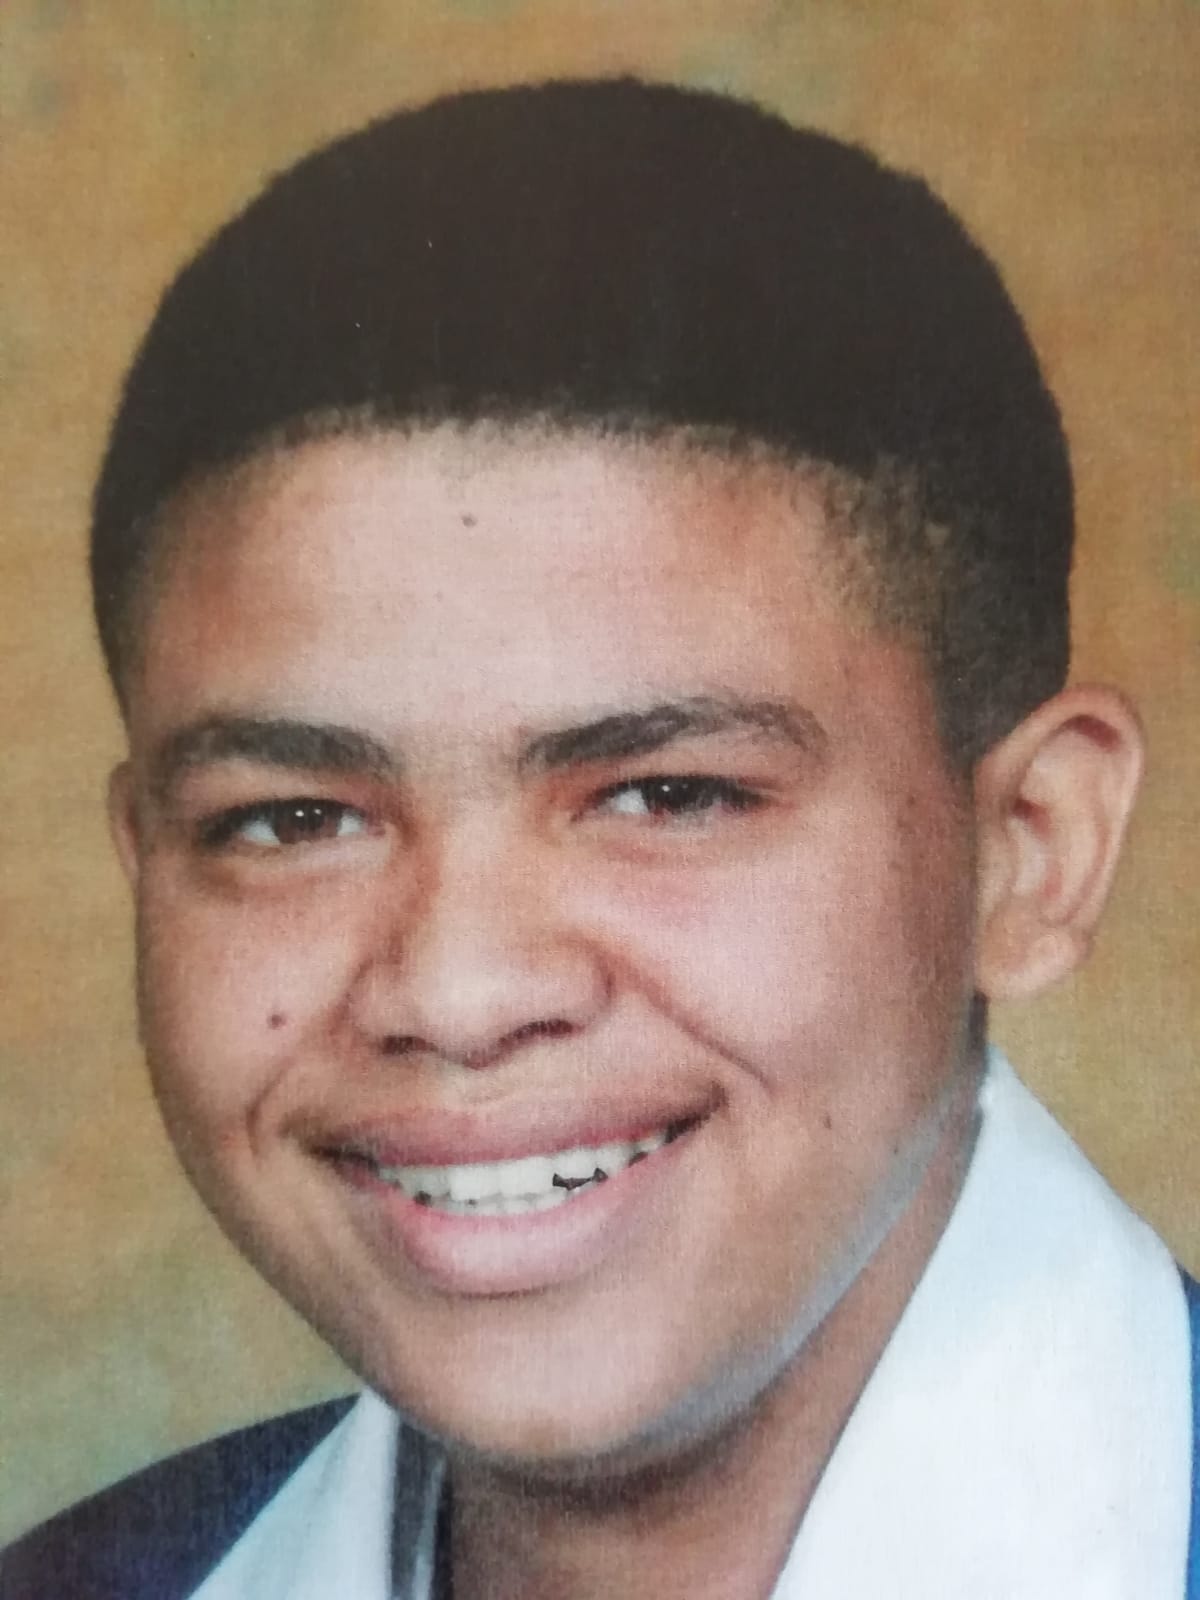 Police seek missing teenager from Port Elizabeth